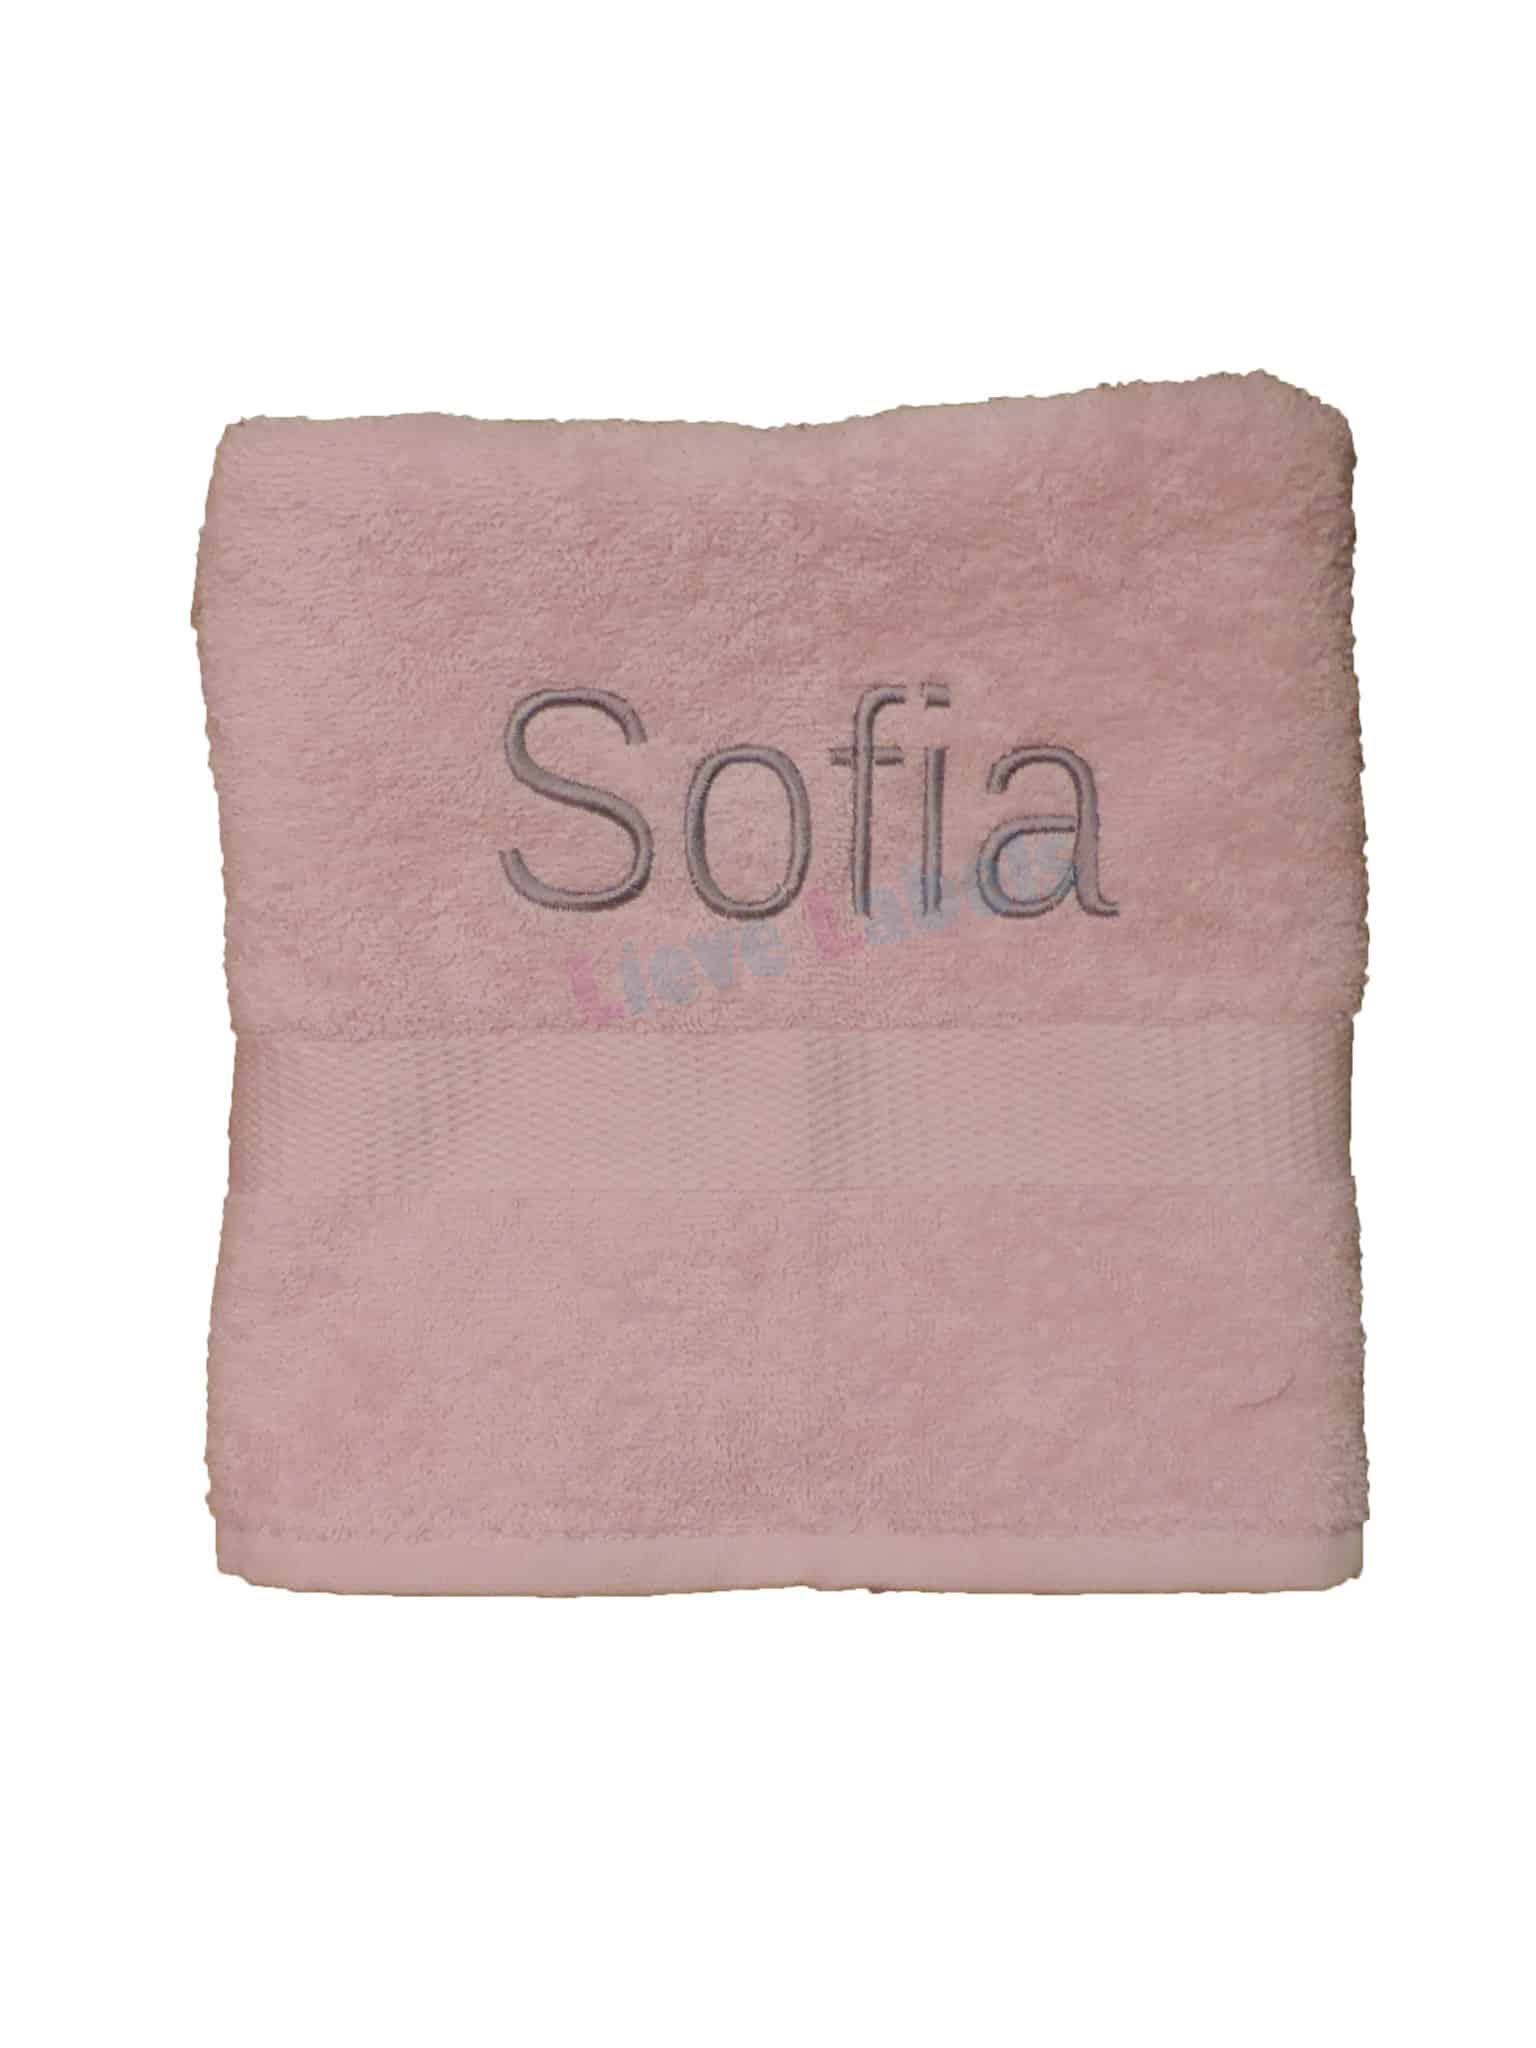 knal Top Occlusie Handdoek met naam - bestel je nu bij Lieve Labels.nl